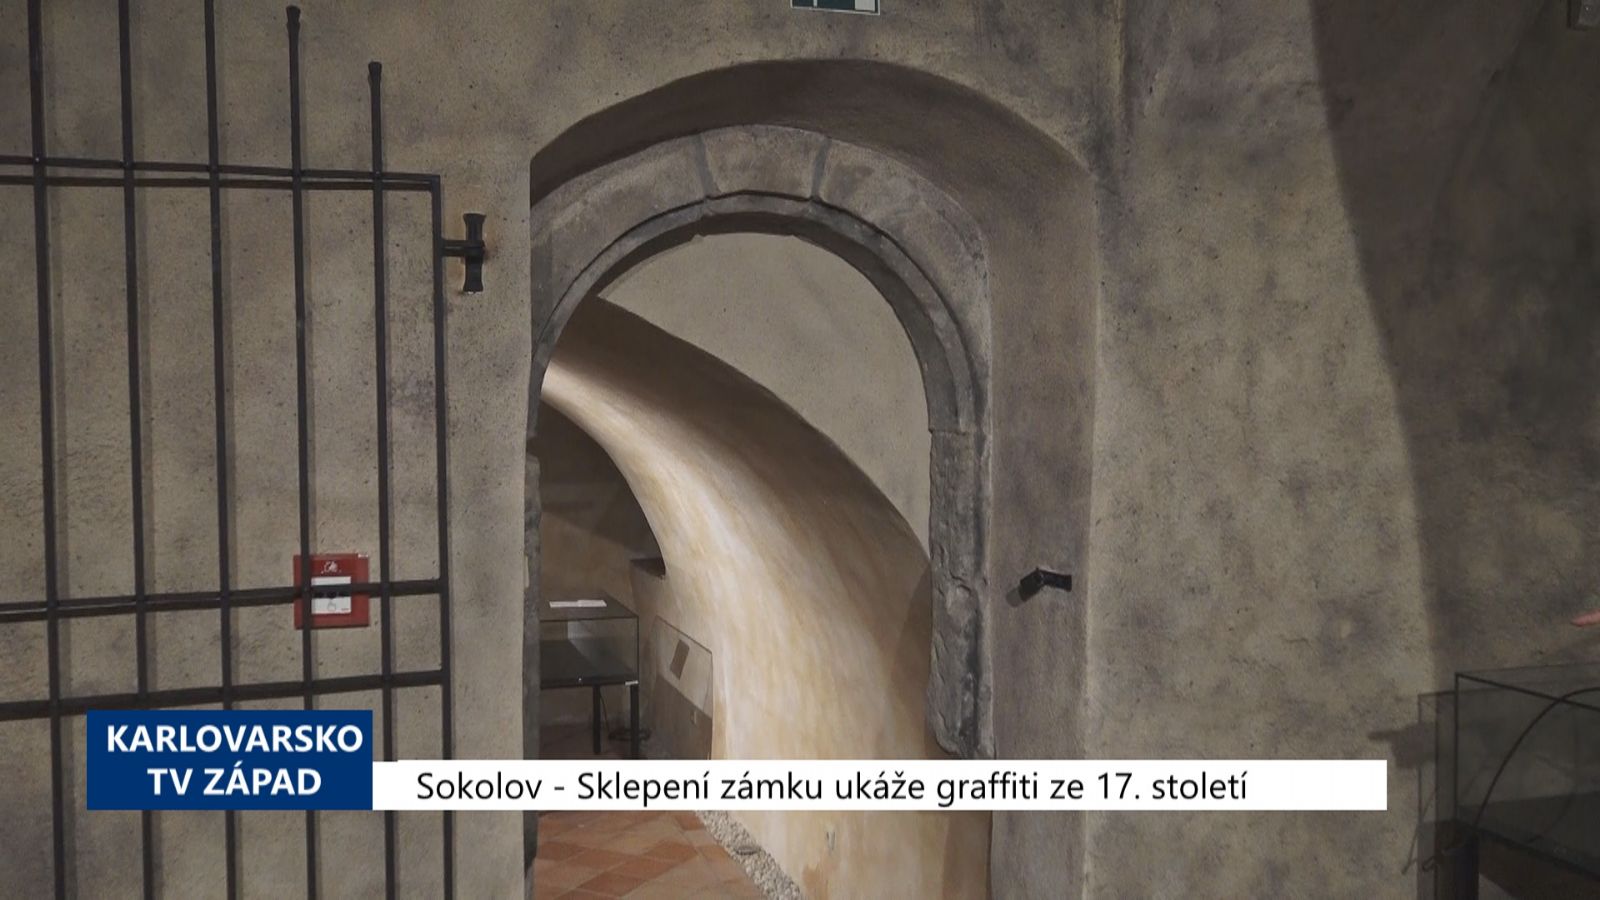 Sokolov: Sklepení zámku ukáže graffiti ze 17. století (TV Západ)